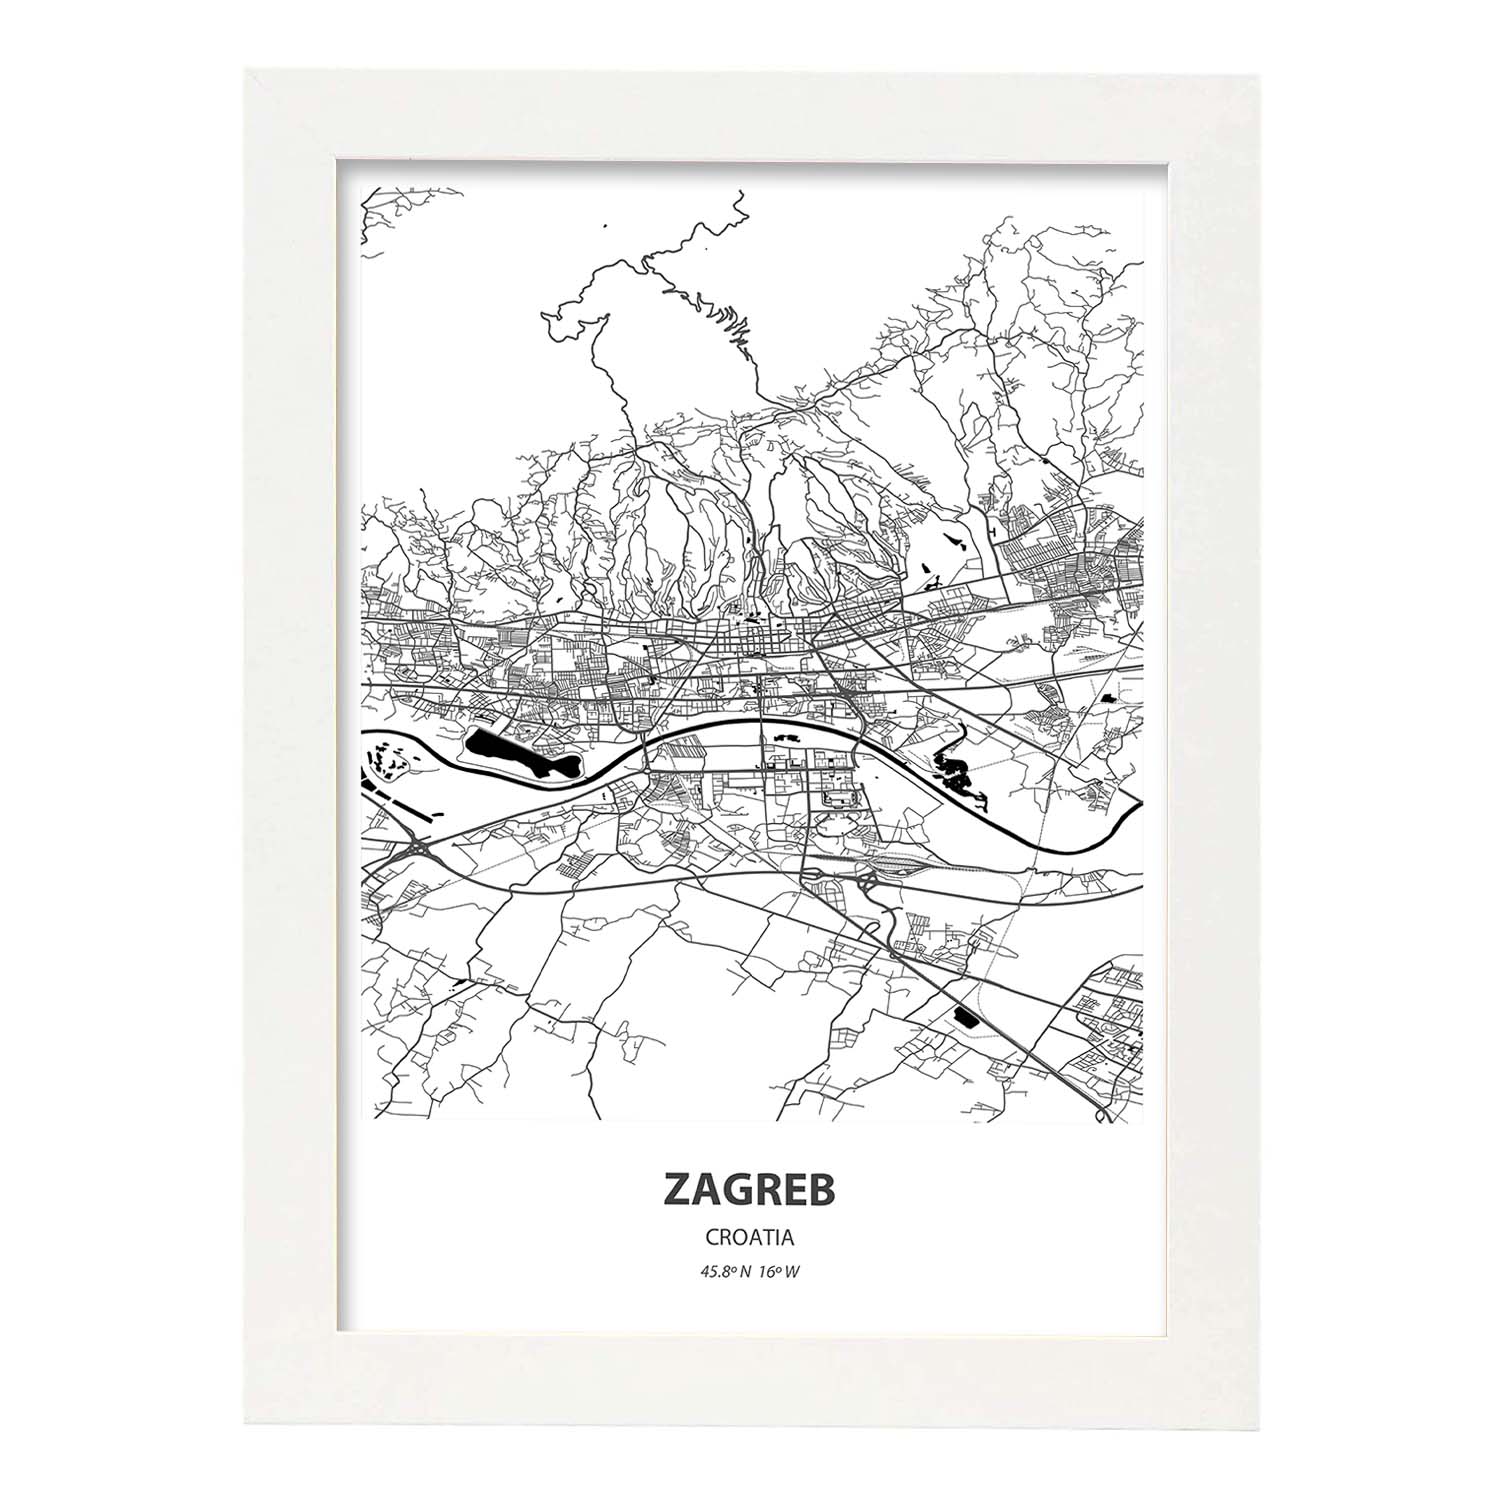 Poster con mapa de Zagreb - Croacia. Láminas de ciudades de Europa con mares y ríos en color negro.-Artwork-Nacnic-A4-Marco Blanco-Nacnic Estudio SL